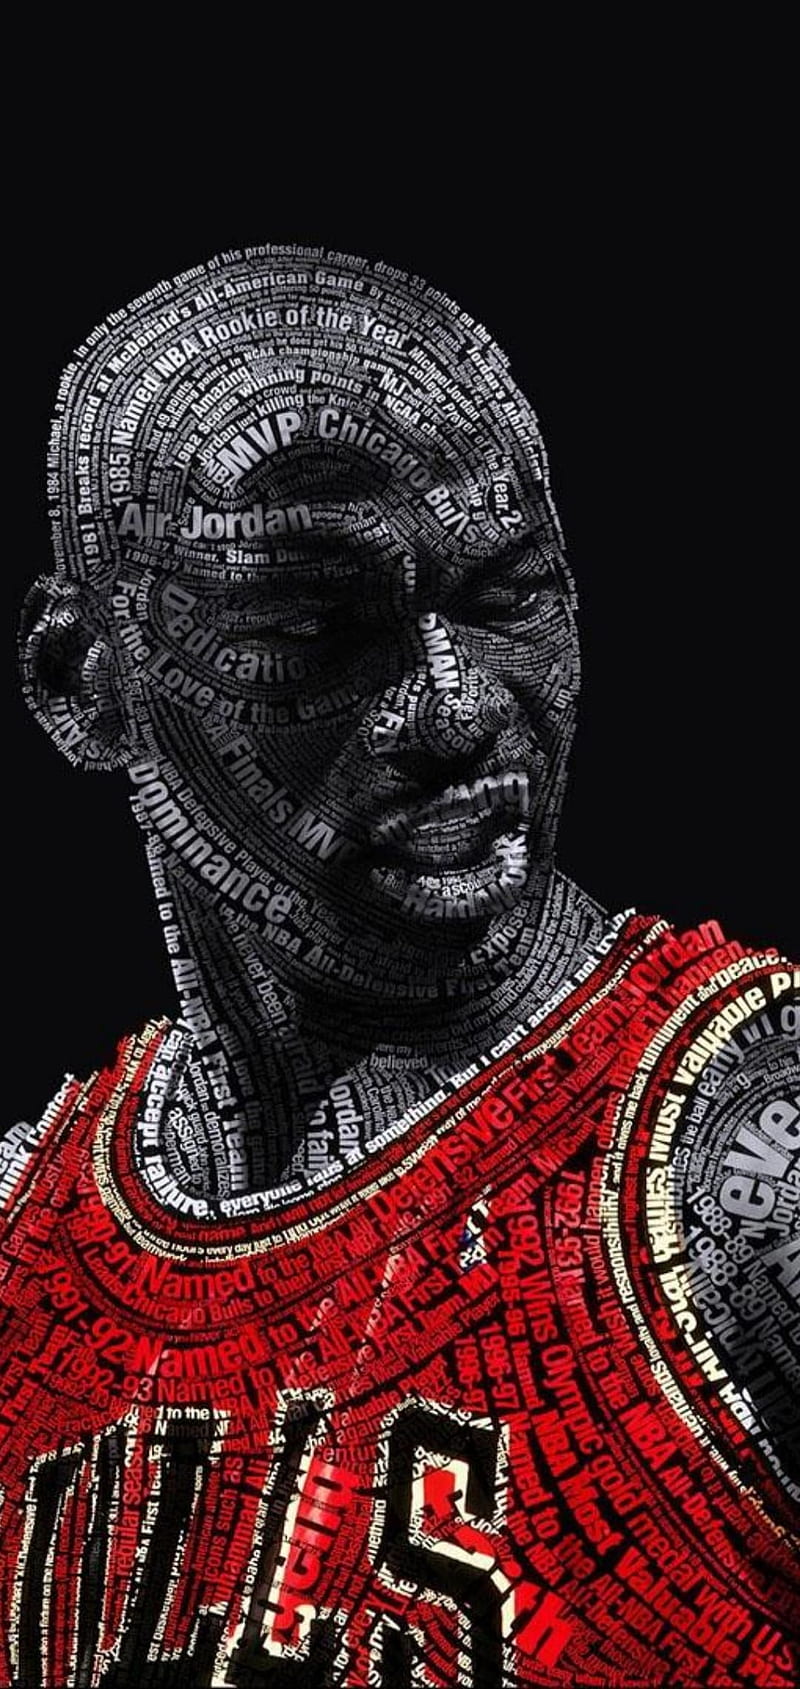 Michael Jordan, Air Jordan Red, HD phone wallpaper